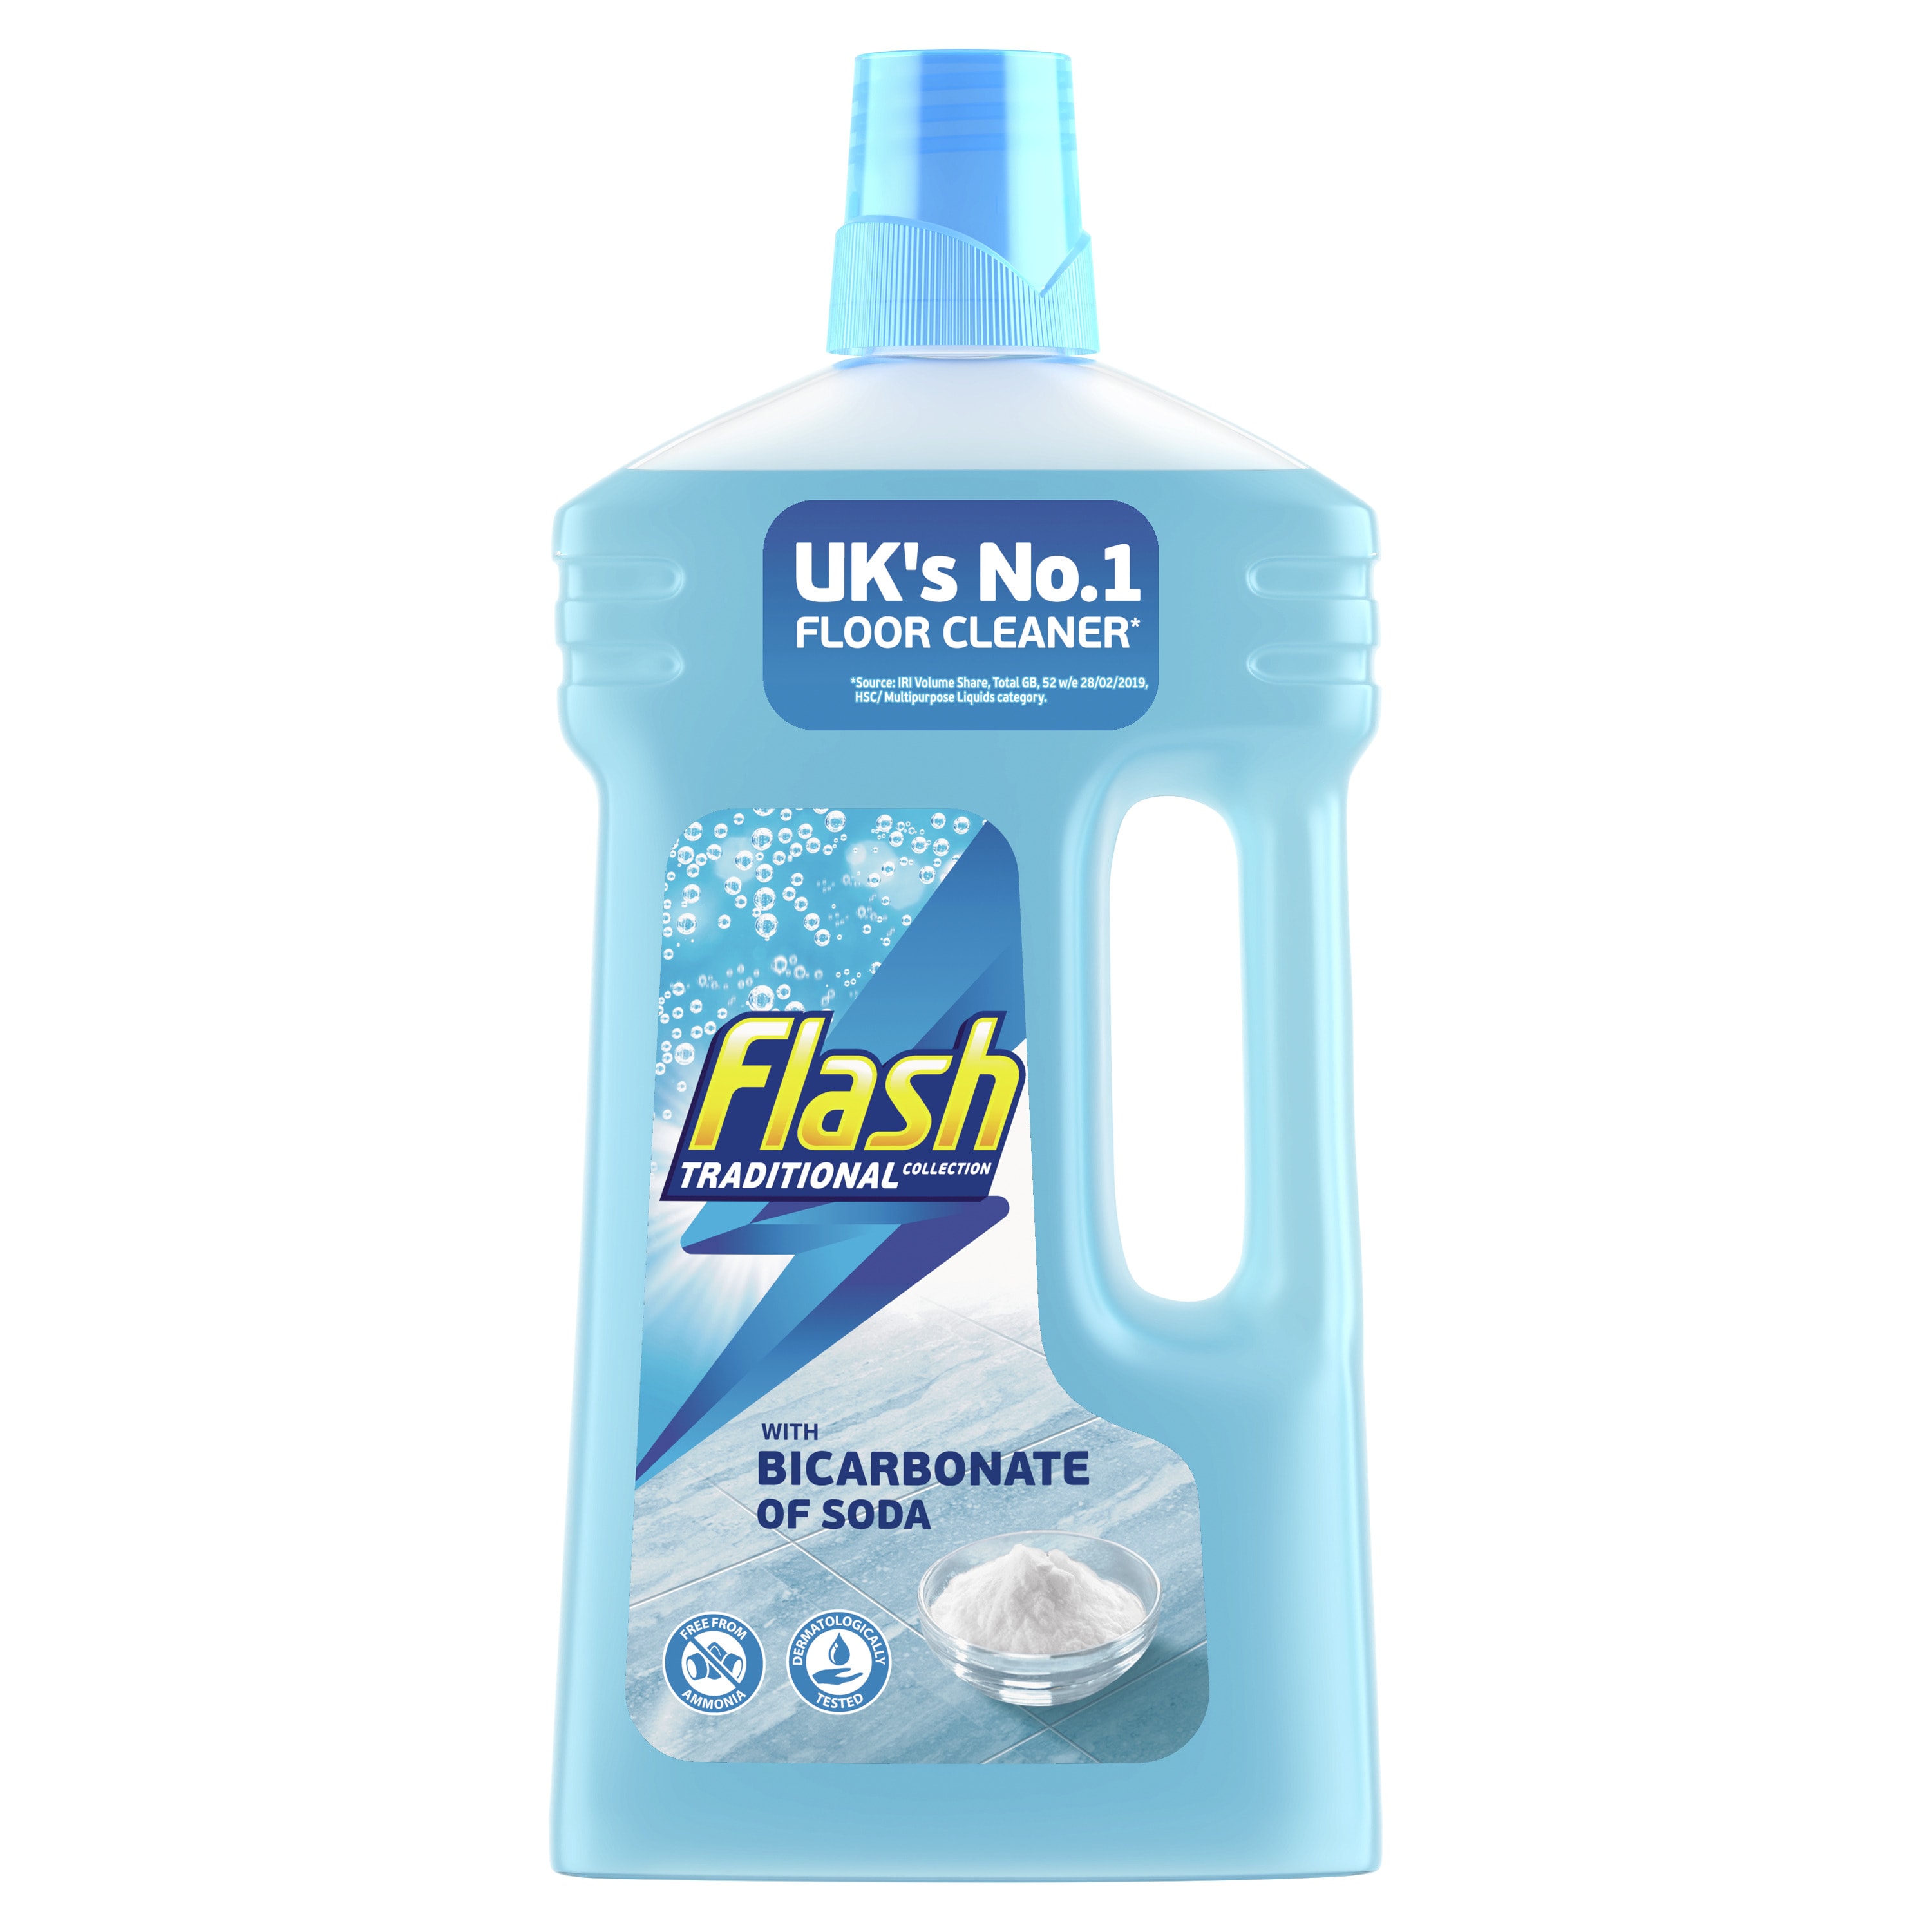 Flash Multi Purpose Floor Cleaner Liquid with Bicarbonate of Soda